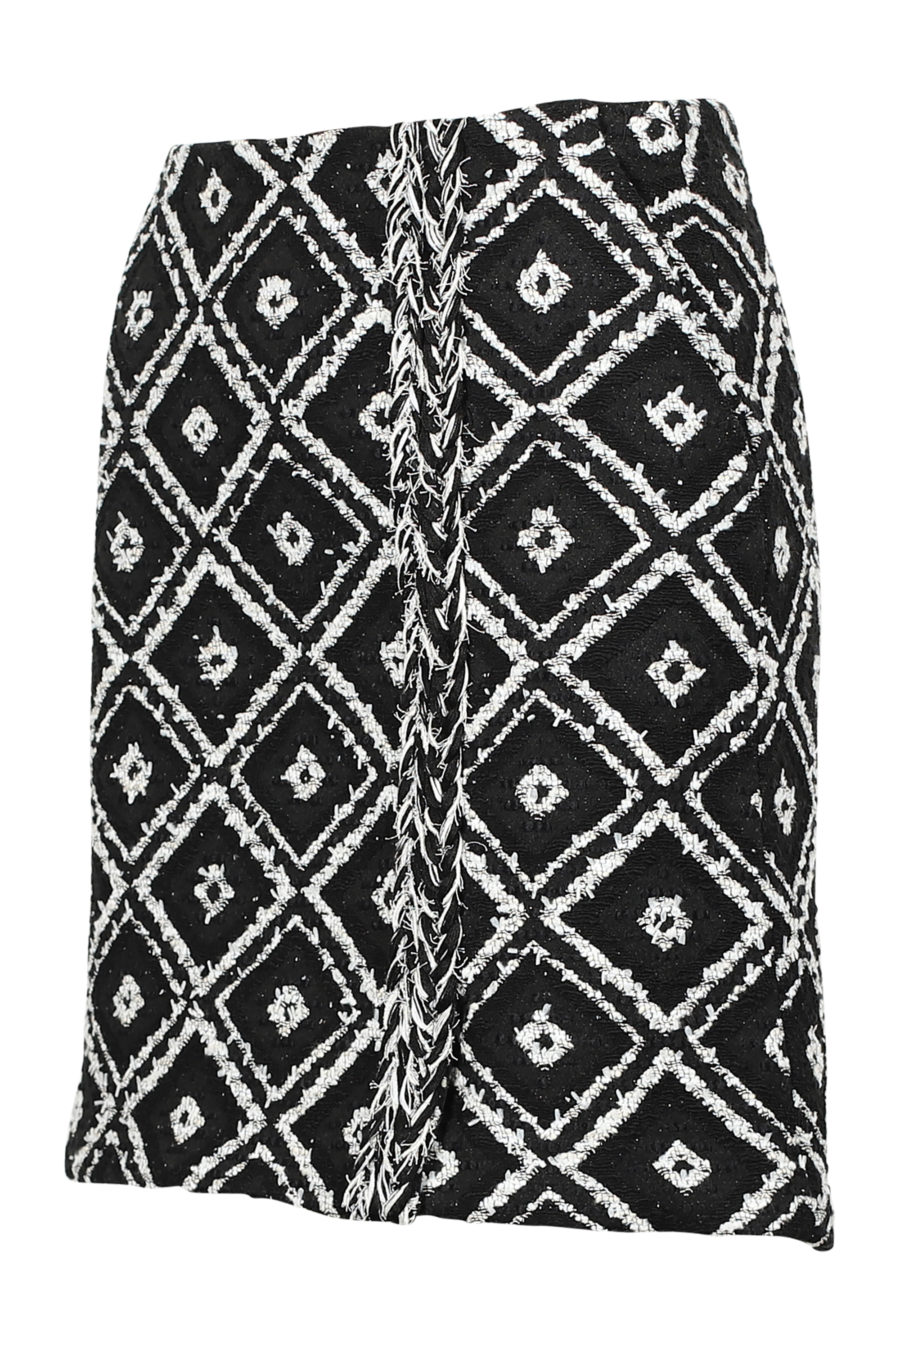 Falda negra y blanca geométrica "Boucle" - IMG 3179